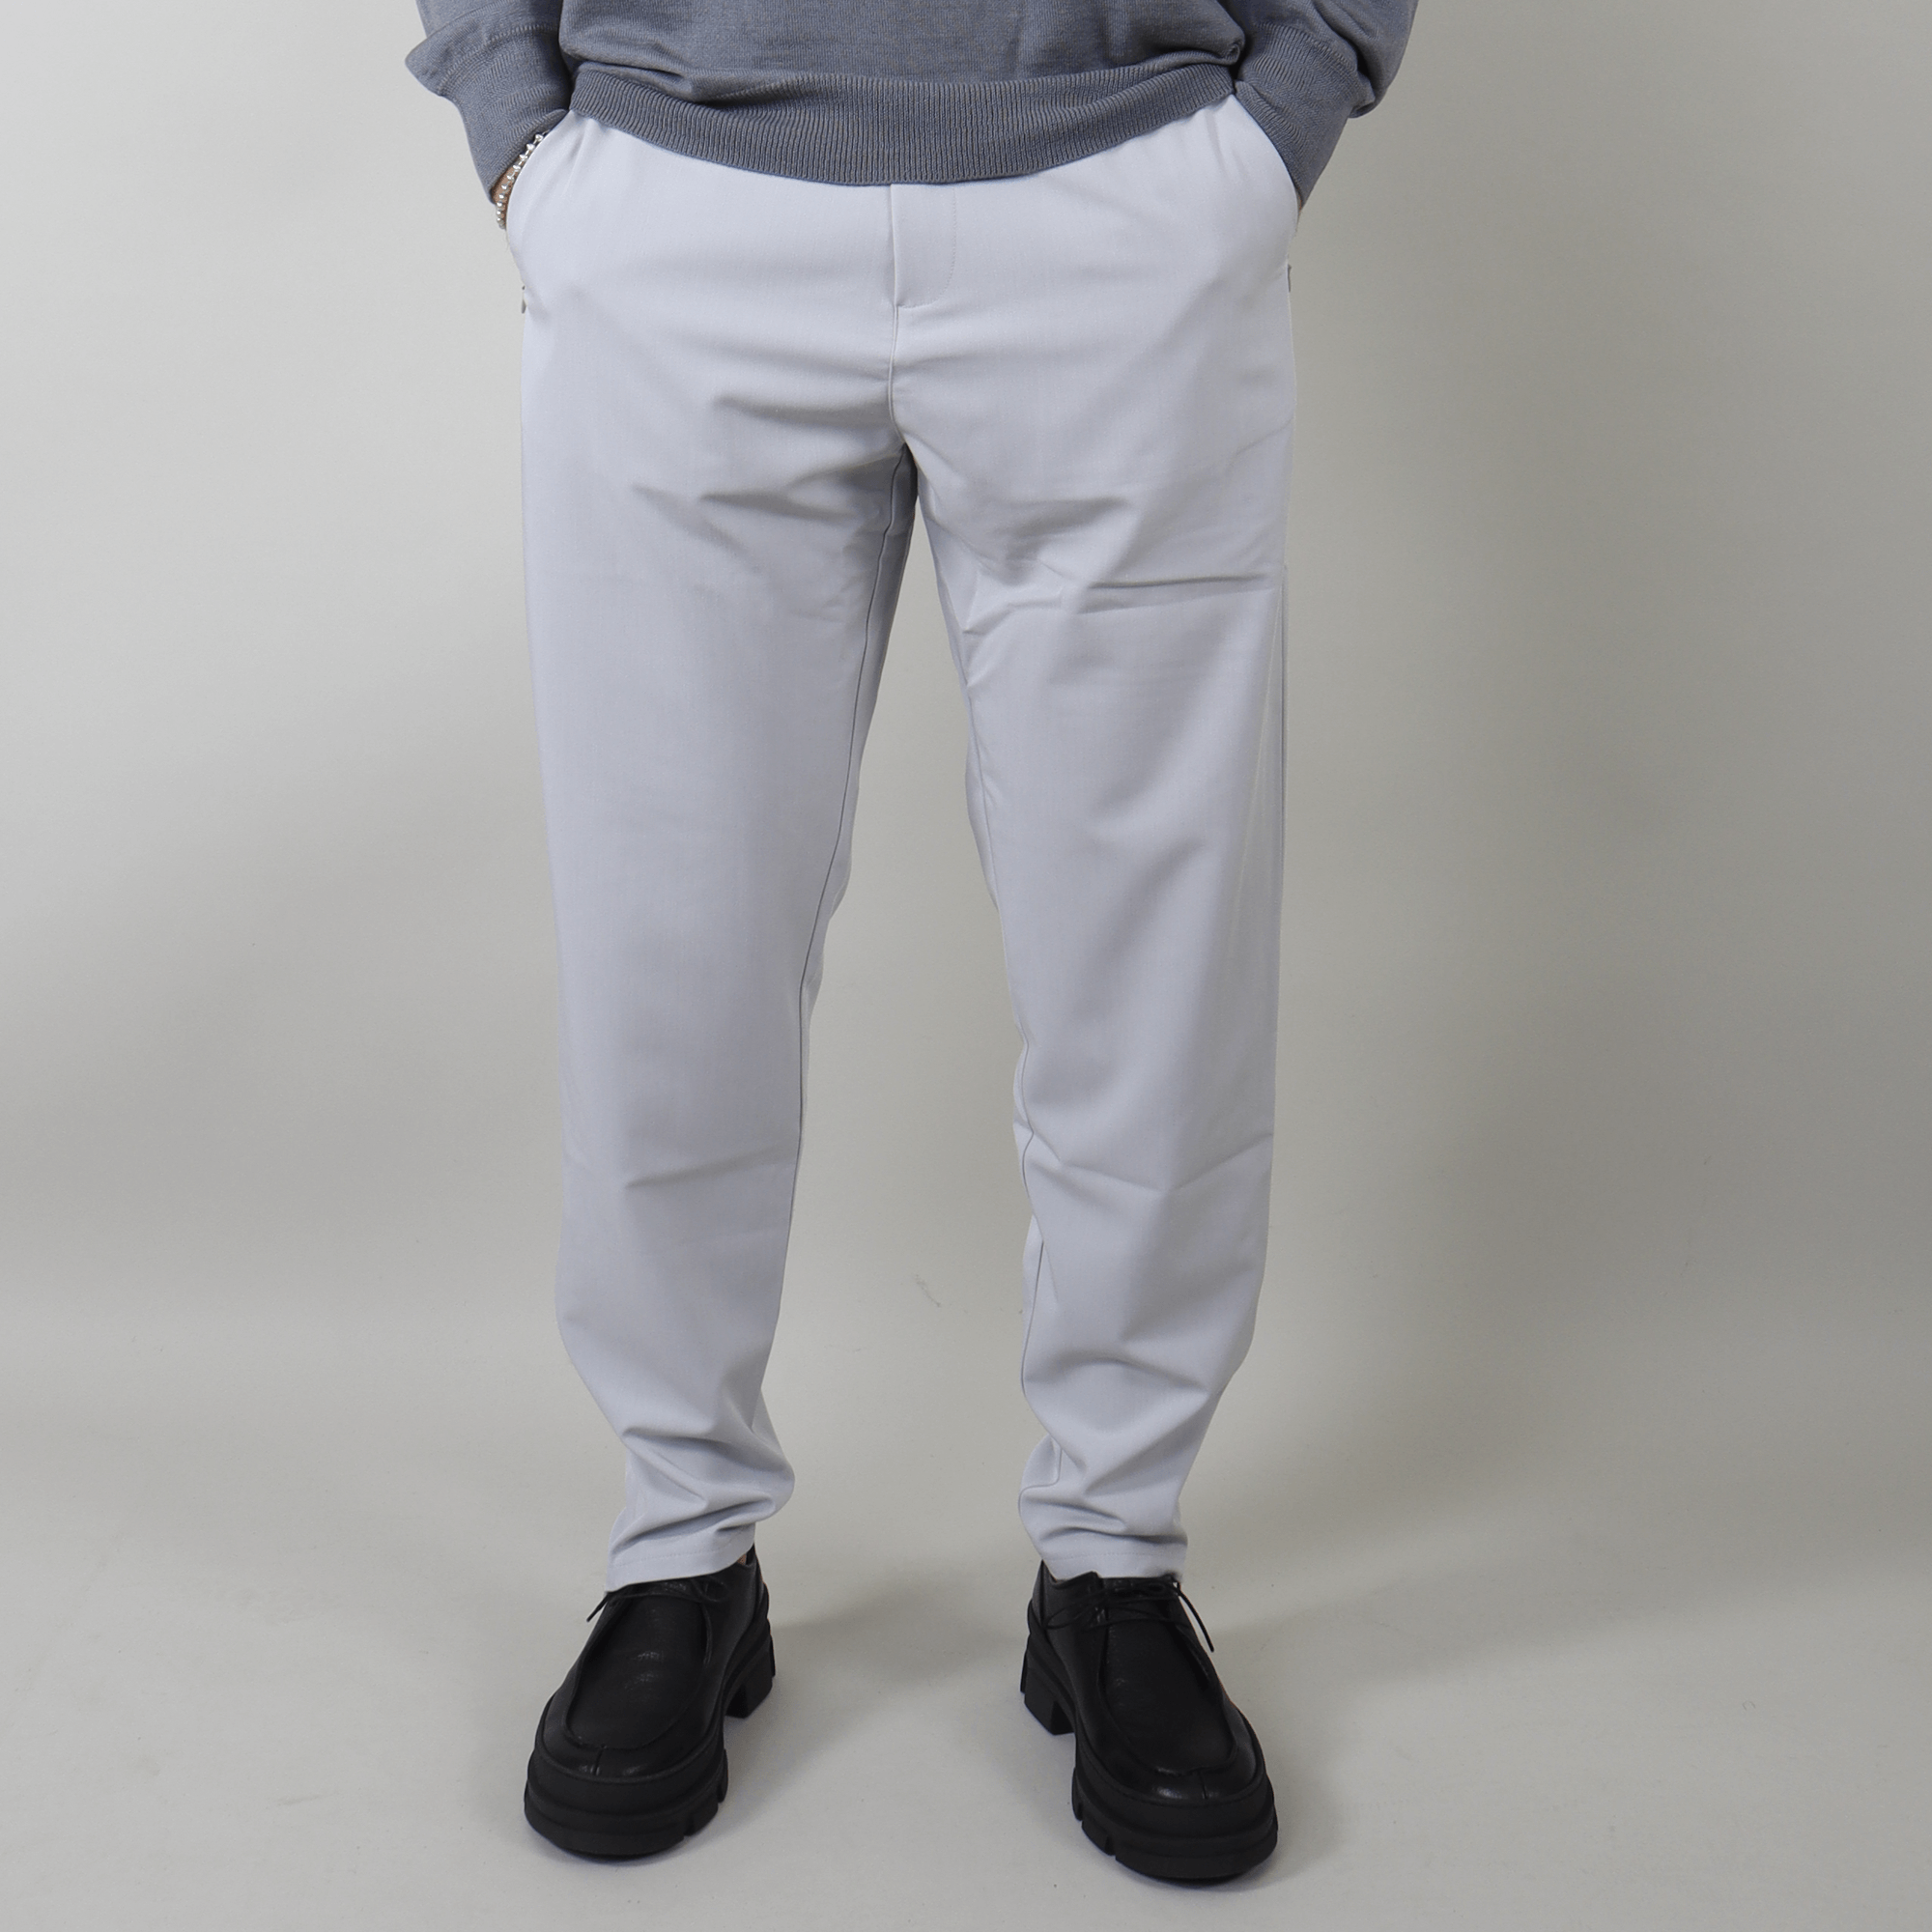 PRJCT zip pants pantalon light grey